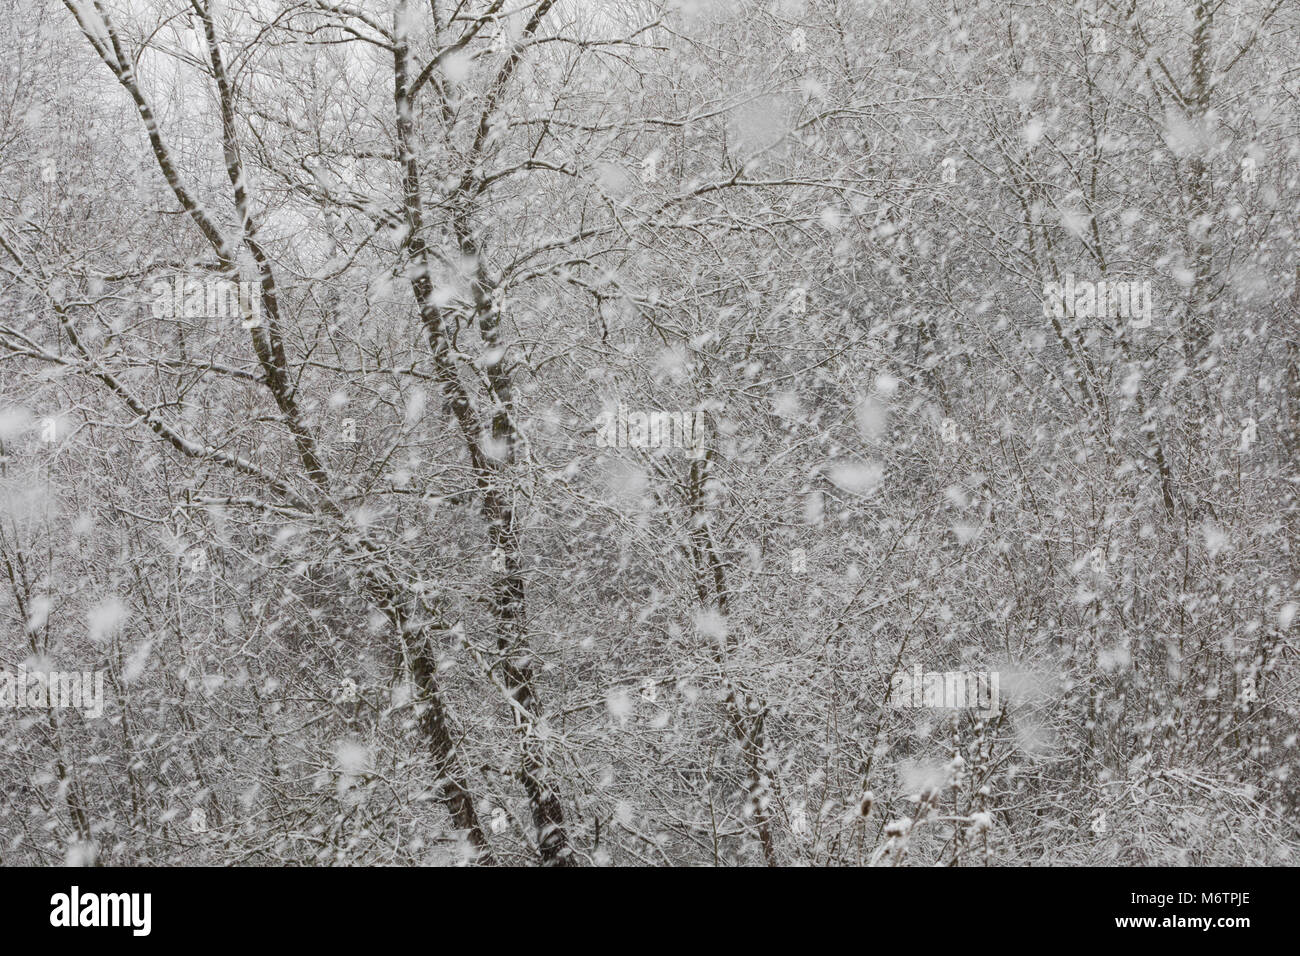 Schneefall, Schneeschauer, Schneegestöber, Winter, Schnee, Winterlandschaft, Winterstimmung, winterlich, eisig, kalt, snow Stock Photo